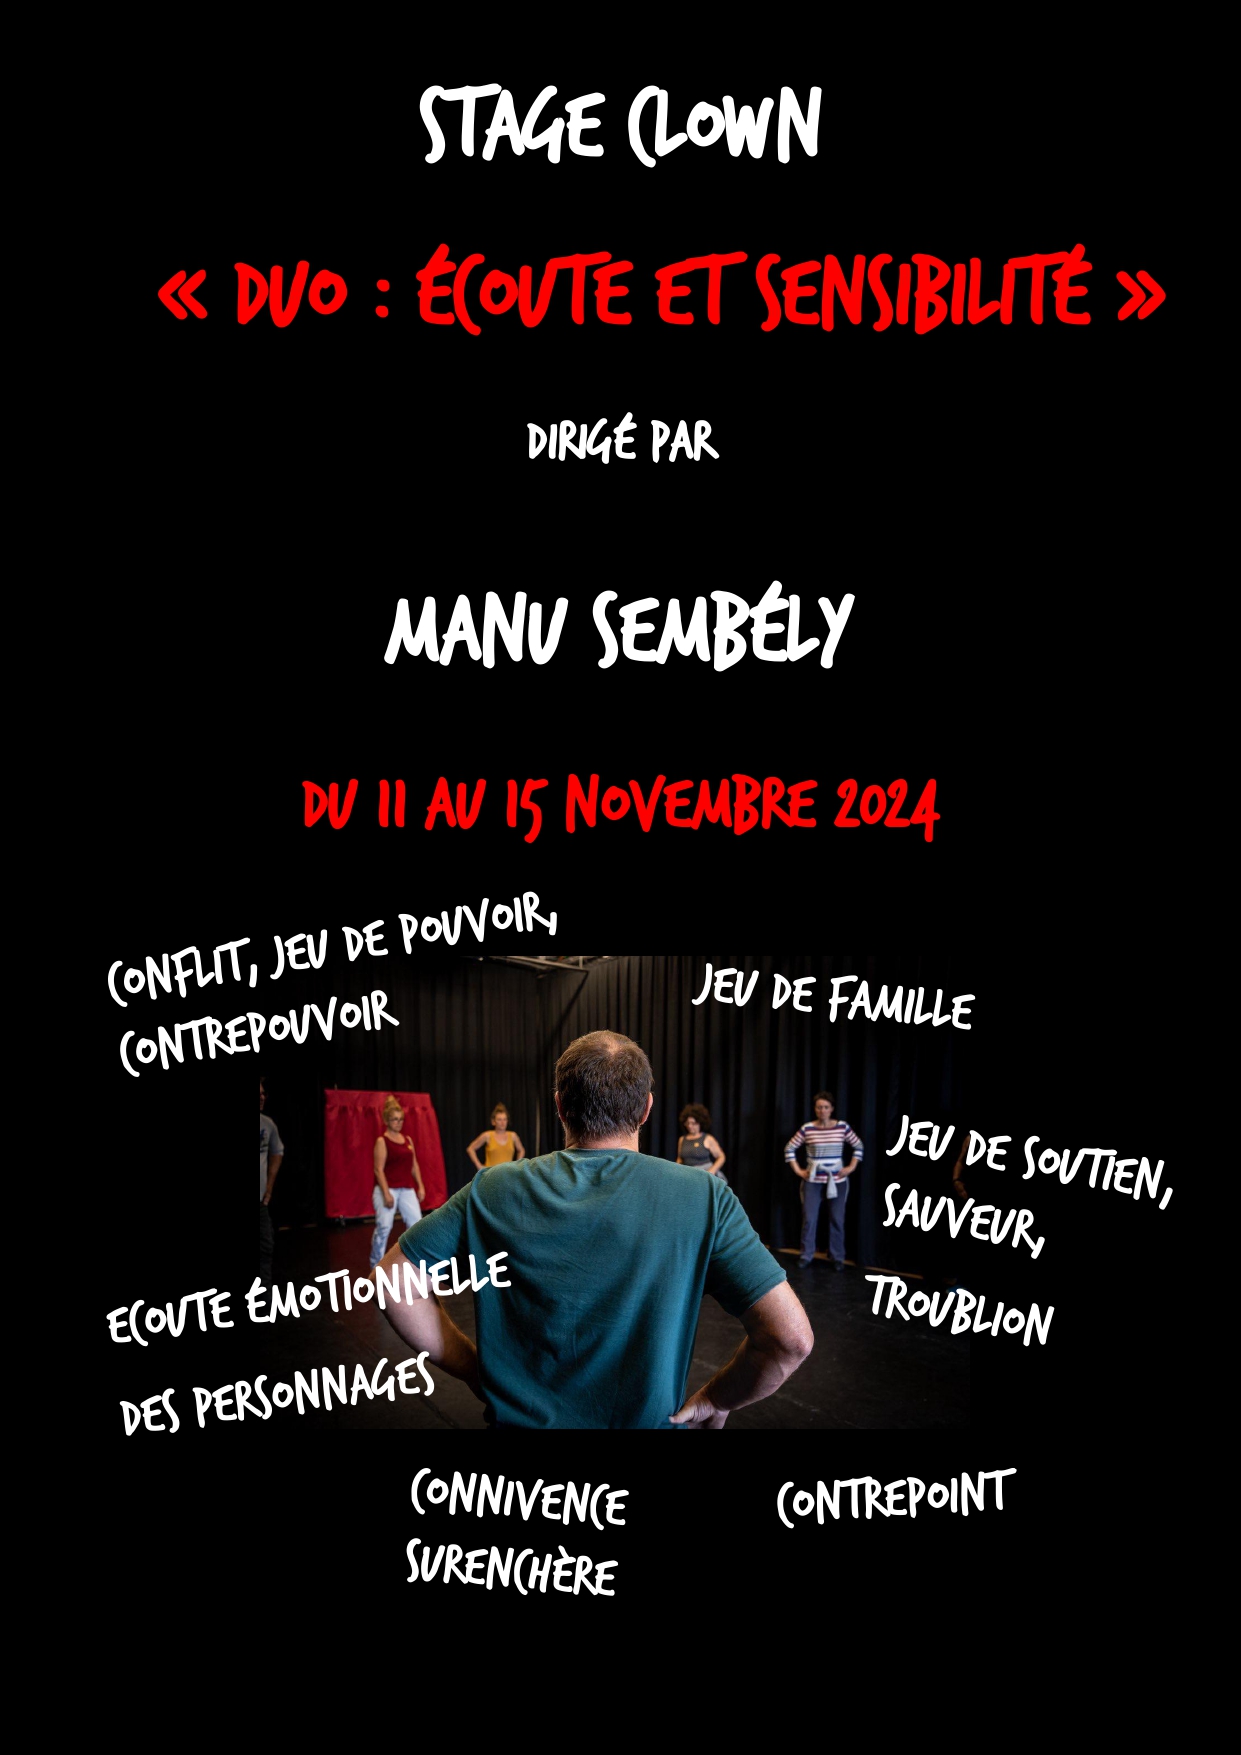 Stage de clown : Duo : Ecoute et sensibilité dirigé par Manu Sembély 